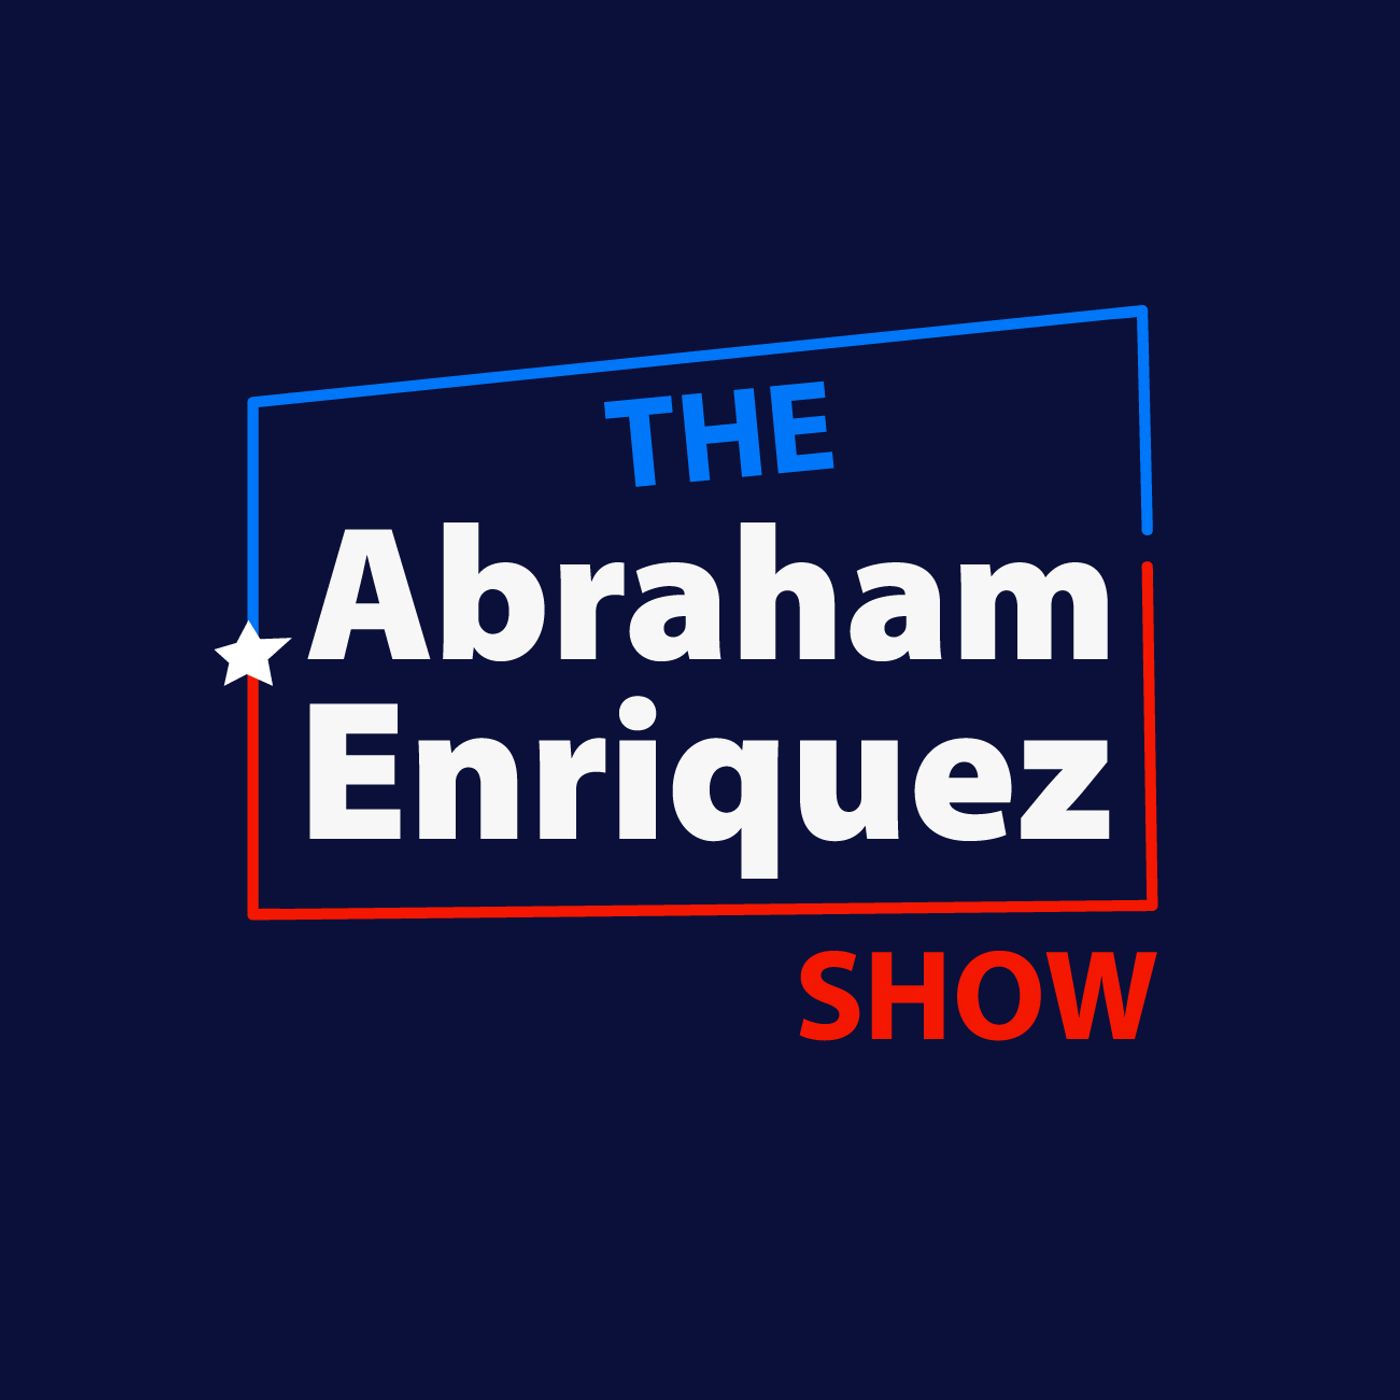 The Abraham Enriquez Show: The Honorable John Sanchez